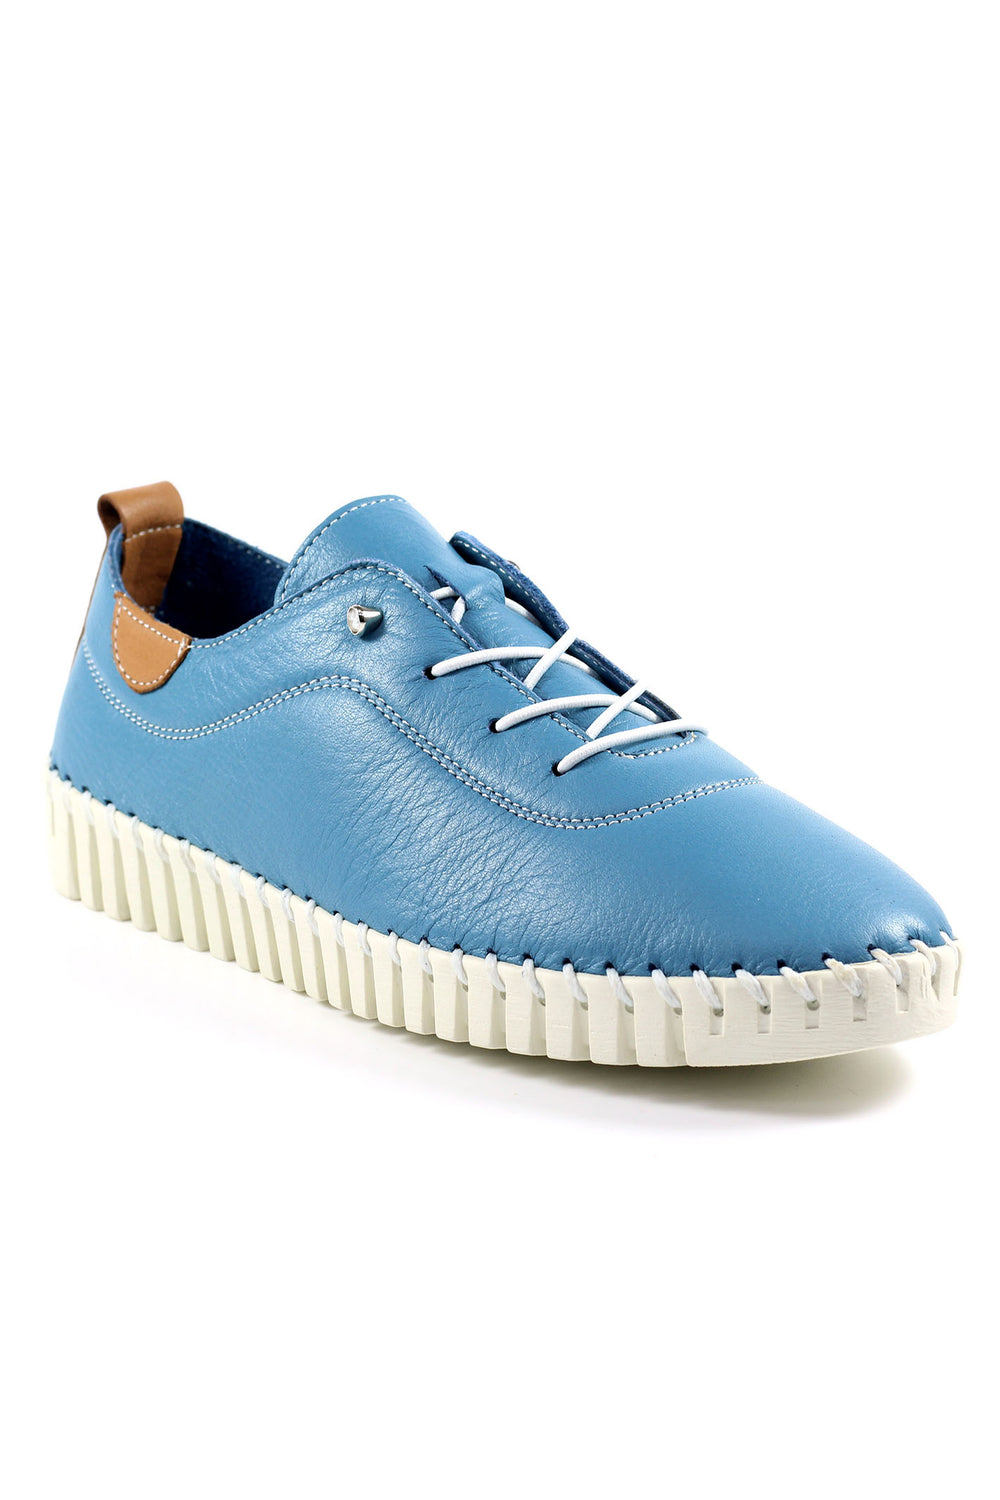 Lunar FLM011 Mid Blue Flamborough Leather Shoes - Experience Boutique